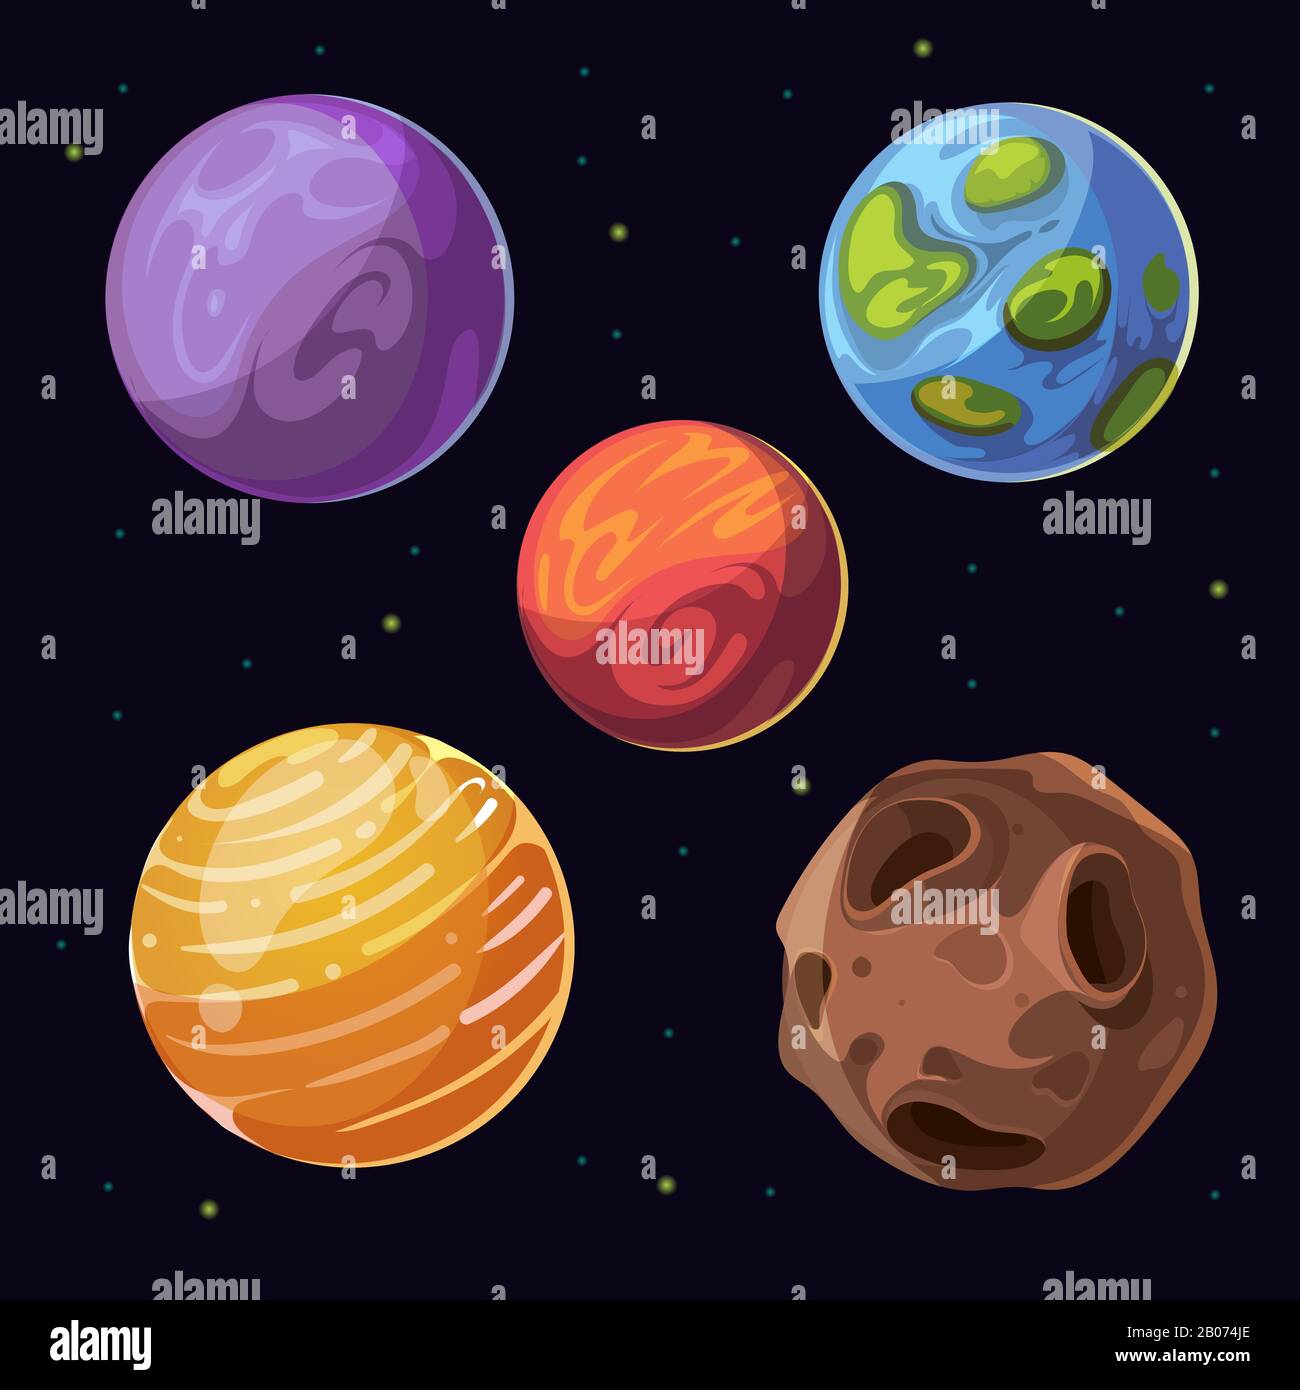 Cartoon Alien Planets, Monde Asteroiden auf Weltraum-Hintergrund. Himmelskörper und farbiger Planet. Vektorgrafiken Stock Vektor